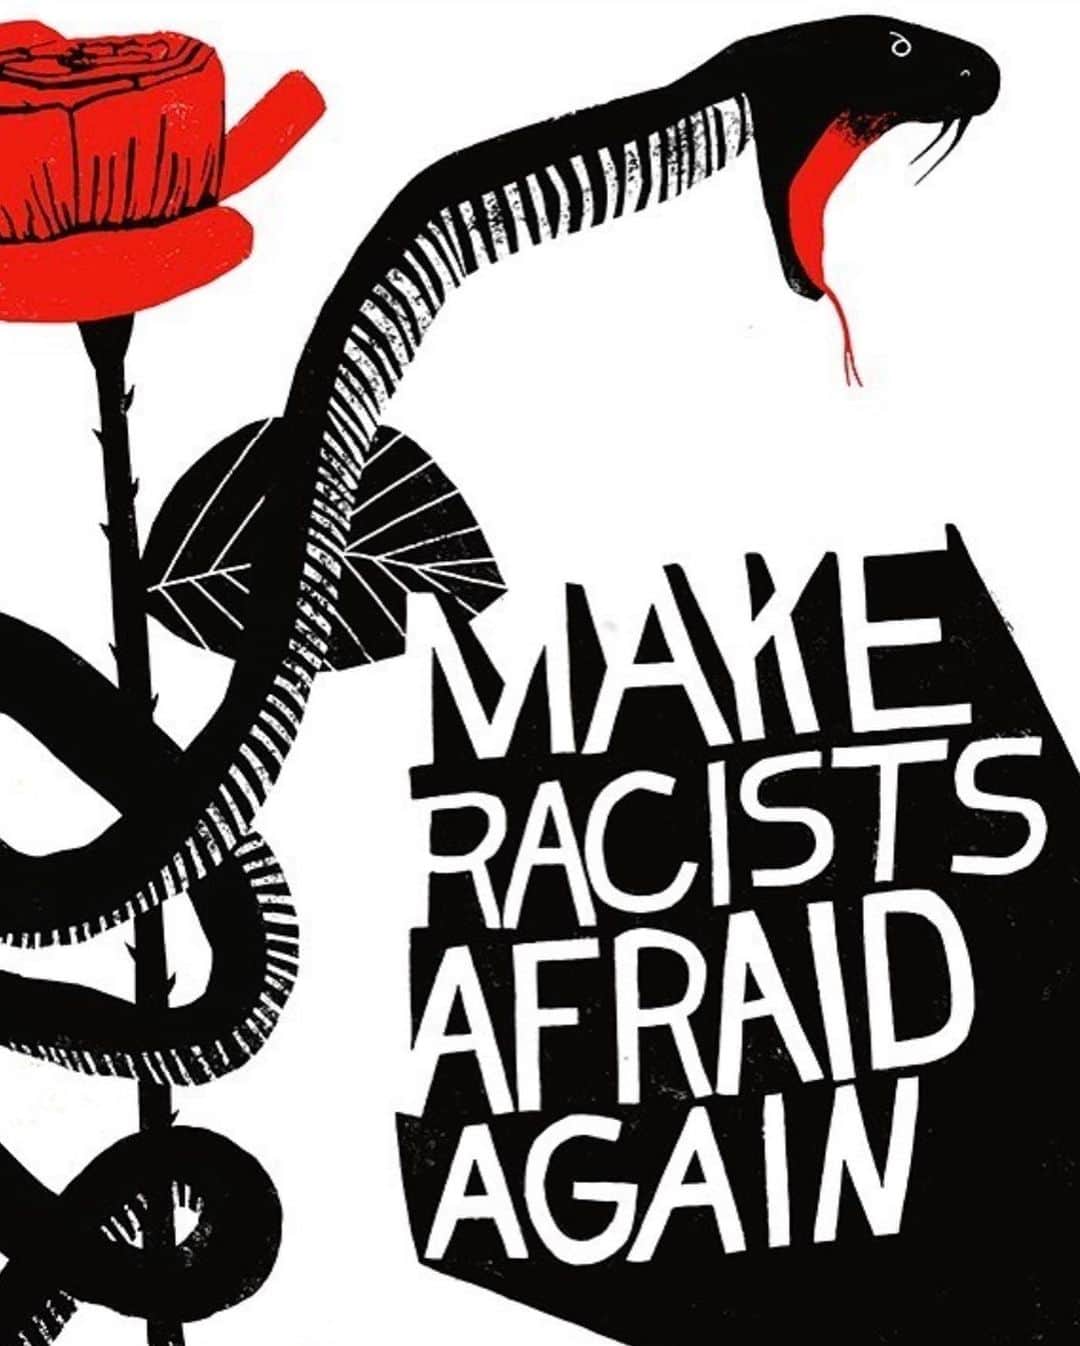 アマンダ・サイフリッドさんのインスタグラム写真 - (アマンダ・サイフリッドInstagram)「👉🏼#Repost @anisamakhoul ・・・ Let’s vote the racist thieves, out of the Senate, the House and the other House! America is ready for reform! ⠀⠀⠀⠀⠀⠀⠀⠀⠀⠀⠀⠀ ⠀⠀⠀⠀⠀⠀⠀⠀⠀⠀⠀⠀ ⠀⠀⠀⠀⠀⠀⠀⠀⠀⠀⠀⠀ ⠀⠀⠀⠀⠀⠀⠀⠀⠀⠀⠀⠀ ⠀⠀⠀⠀⠀⠀⠀⠀⠀⠀⠀⠀ ⠀⠀⠀⠀⠀⠀⠀⠀⠀⠀⠀⠀ ⠀⠀⠀⠀⠀⠀⠀⠀⠀⠀⠀⠀ ⠀⠀⠀⠀⠀⠀⠀⠀⠀⠀⠀⠀ ⠀⠀⠀⠀⠀⠀⠀⠀⠀⠀⠀⠀ ⠀⠀⠀⠀⠀⠀⠀⠀⠀⠀⠀⠀ ⠀⠀⠀⠀⠀⠀⠀⠀⠀⠀⠀⠀ ⠀⠀⠀⠀⠀⠀⠀⠀⠀⠀⠀⠀ All profits from this poster go to communitybailfunds.com ⠀⠀⠀⠀⠀⠀⠀⠀⠀⠀⠀⠀ ⠀⠀⠀⠀⠀⠀⠀⠀⠀⠀⠀⠀ ⠀⠀⠀⠀⠀⠀⠀⠀⠀⠀⠀⠀ ⠀⠀⠀⠀⠀⠀⠀⠀⠀⠀⠀⠀ ⠀⠀⠀⠀⠀⠀⠀⠀⠀⠀⠀⠀ ⠀⠀⠀⠀⠀⠀⠀⠀⠀⠀⠀⠀ ⠀⠀⠀⠀⠀⠀⠀⠀⠀⠀⠀⠀ ⠀⠀⠀⠀⠀⠀⠀⠀⠀⠀⠀⠀ ⠀⠀⠀⠀⠀⠀⠀⠀⠀⠀⠀⠀ ⠀⠀⠀⠀⠀⠀⠀⠀⠀⠀⠀⠀ ⠀⠀⠀⠀⠀⠀⠀⠀⠀⠀⠀⠀ ⠀⠀⠀⠀⠀⠀⠀⠀⠀⠀⠀⠀ ⠀⠀⠀⠀⠀⠀⠀⠀⠀⠀⠀⠀ ⠀⠀⠀⠀⠀⠀⠀⠀⠀⠀⠀⠀ ⠀⠀⠀⠀⠀⠀⠀⠀⠀⠀⠀⠀ ⠀⠀⠀⠀⠀⠀⠀⠀⠀⠀⠀⠀ ⠀⠀⠀⠀⠀⠀⠀⠀⠀⠀⠀⠀ ⠀⠀⠀⠀⠀⠀⠀⠀⠀⠀⠀⠀ ⠀⠀⠀⠀⠀⠀⠀⠀⠀⠀⠀⠀ ⠀⠀⠀⠀⠀⠀⠀⠀⠀⠀⠀⠀ ⠀⠀⠀⠀⠀⠀⠀⠀⠀⠀⠀⠀ ⠀⠀⠀⠀⠀⠀⠀⠀⠀⠀⠀⠀ ⠀⠀⠀⠀⠀⠀⠀⠀⠀⠀⠀⠀ ⠀⠀⠀⠀⠀⠀⠀⠀⠀⠀⠀⠀ #blacklivesmatter #justiceforgeorgefloyd #policereform #justiceforahmaud #justiceforbreonnataylor」6月4日 10時39分 - mingey